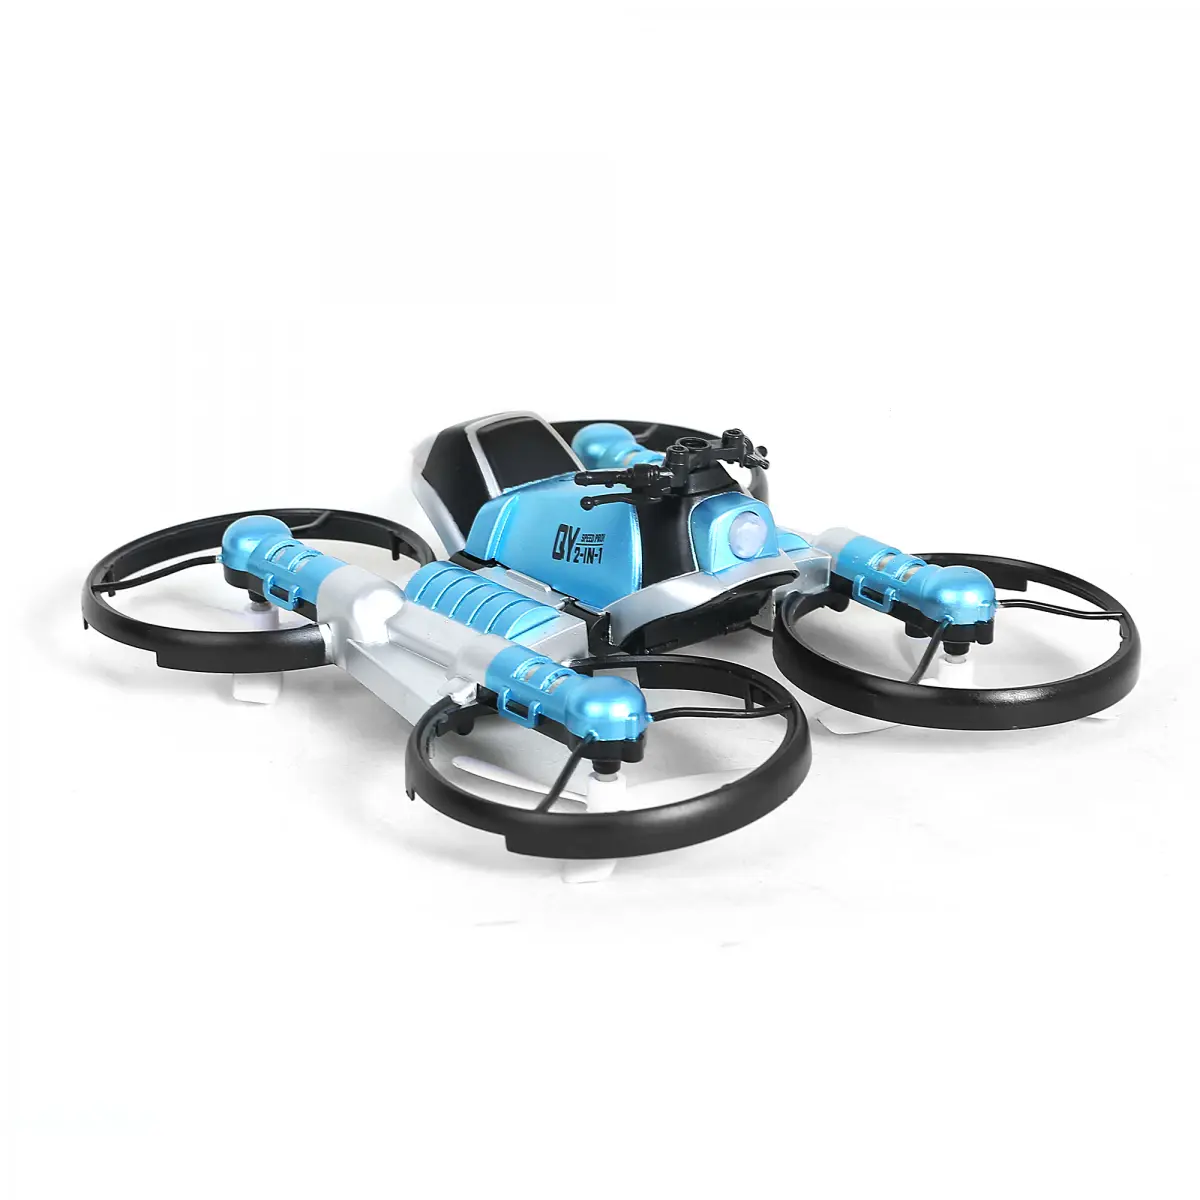 Hamleys 2 In 1 Transforming Motorbike Drone with Remote, 14Y+, Blue & Black